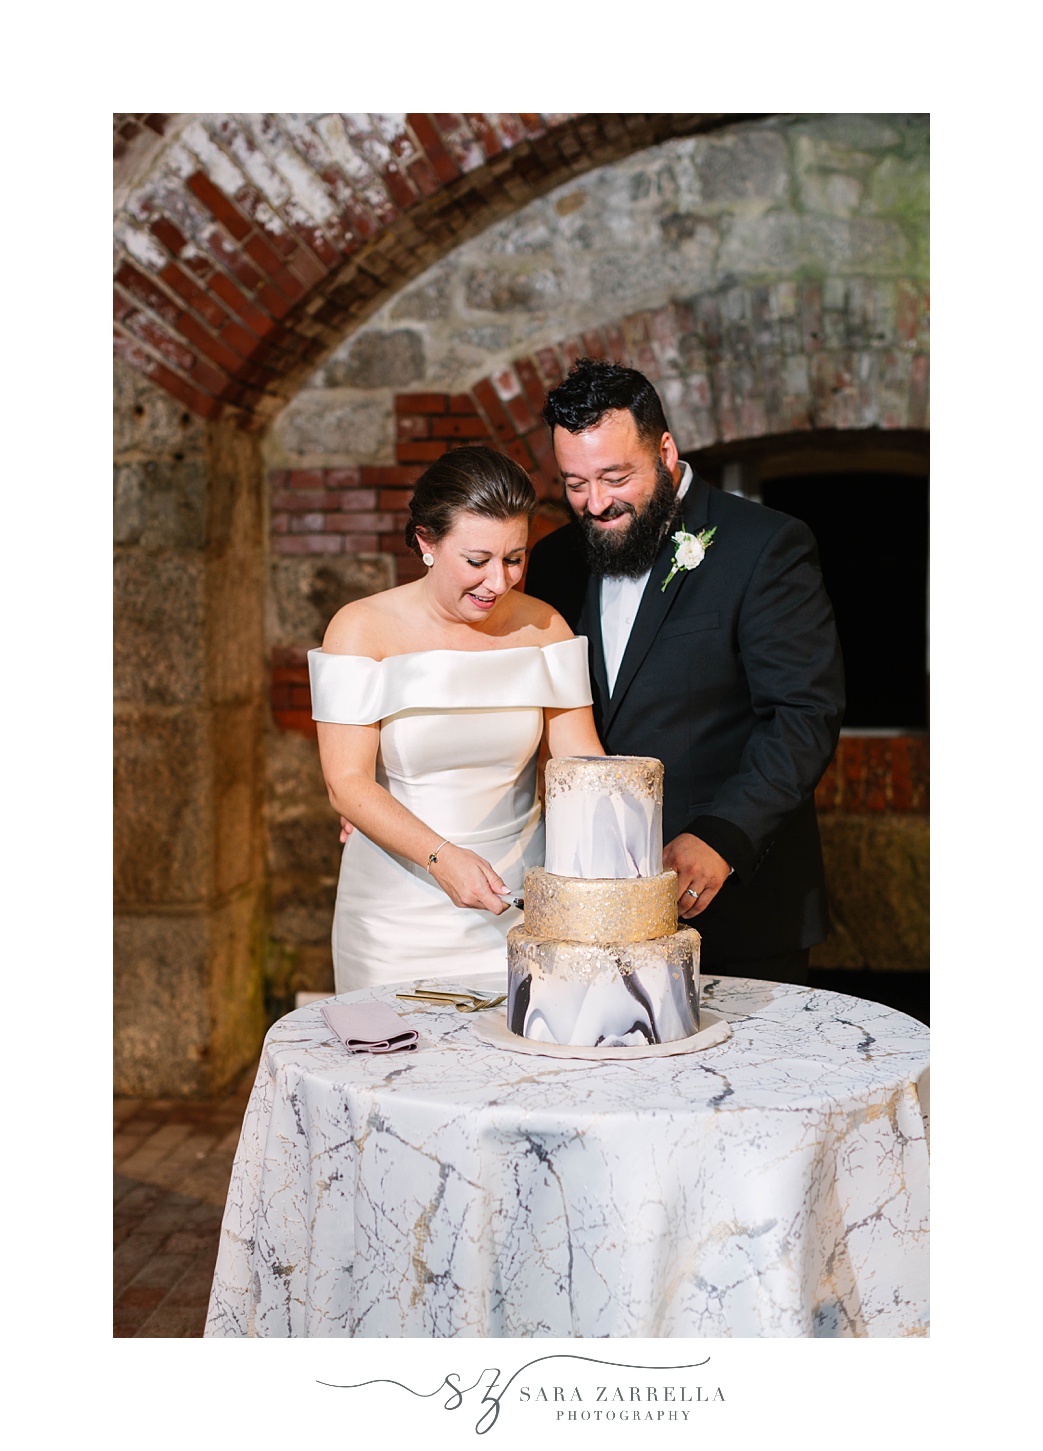 newlyweds cut wedding cake during Fort Adams wedding reception 